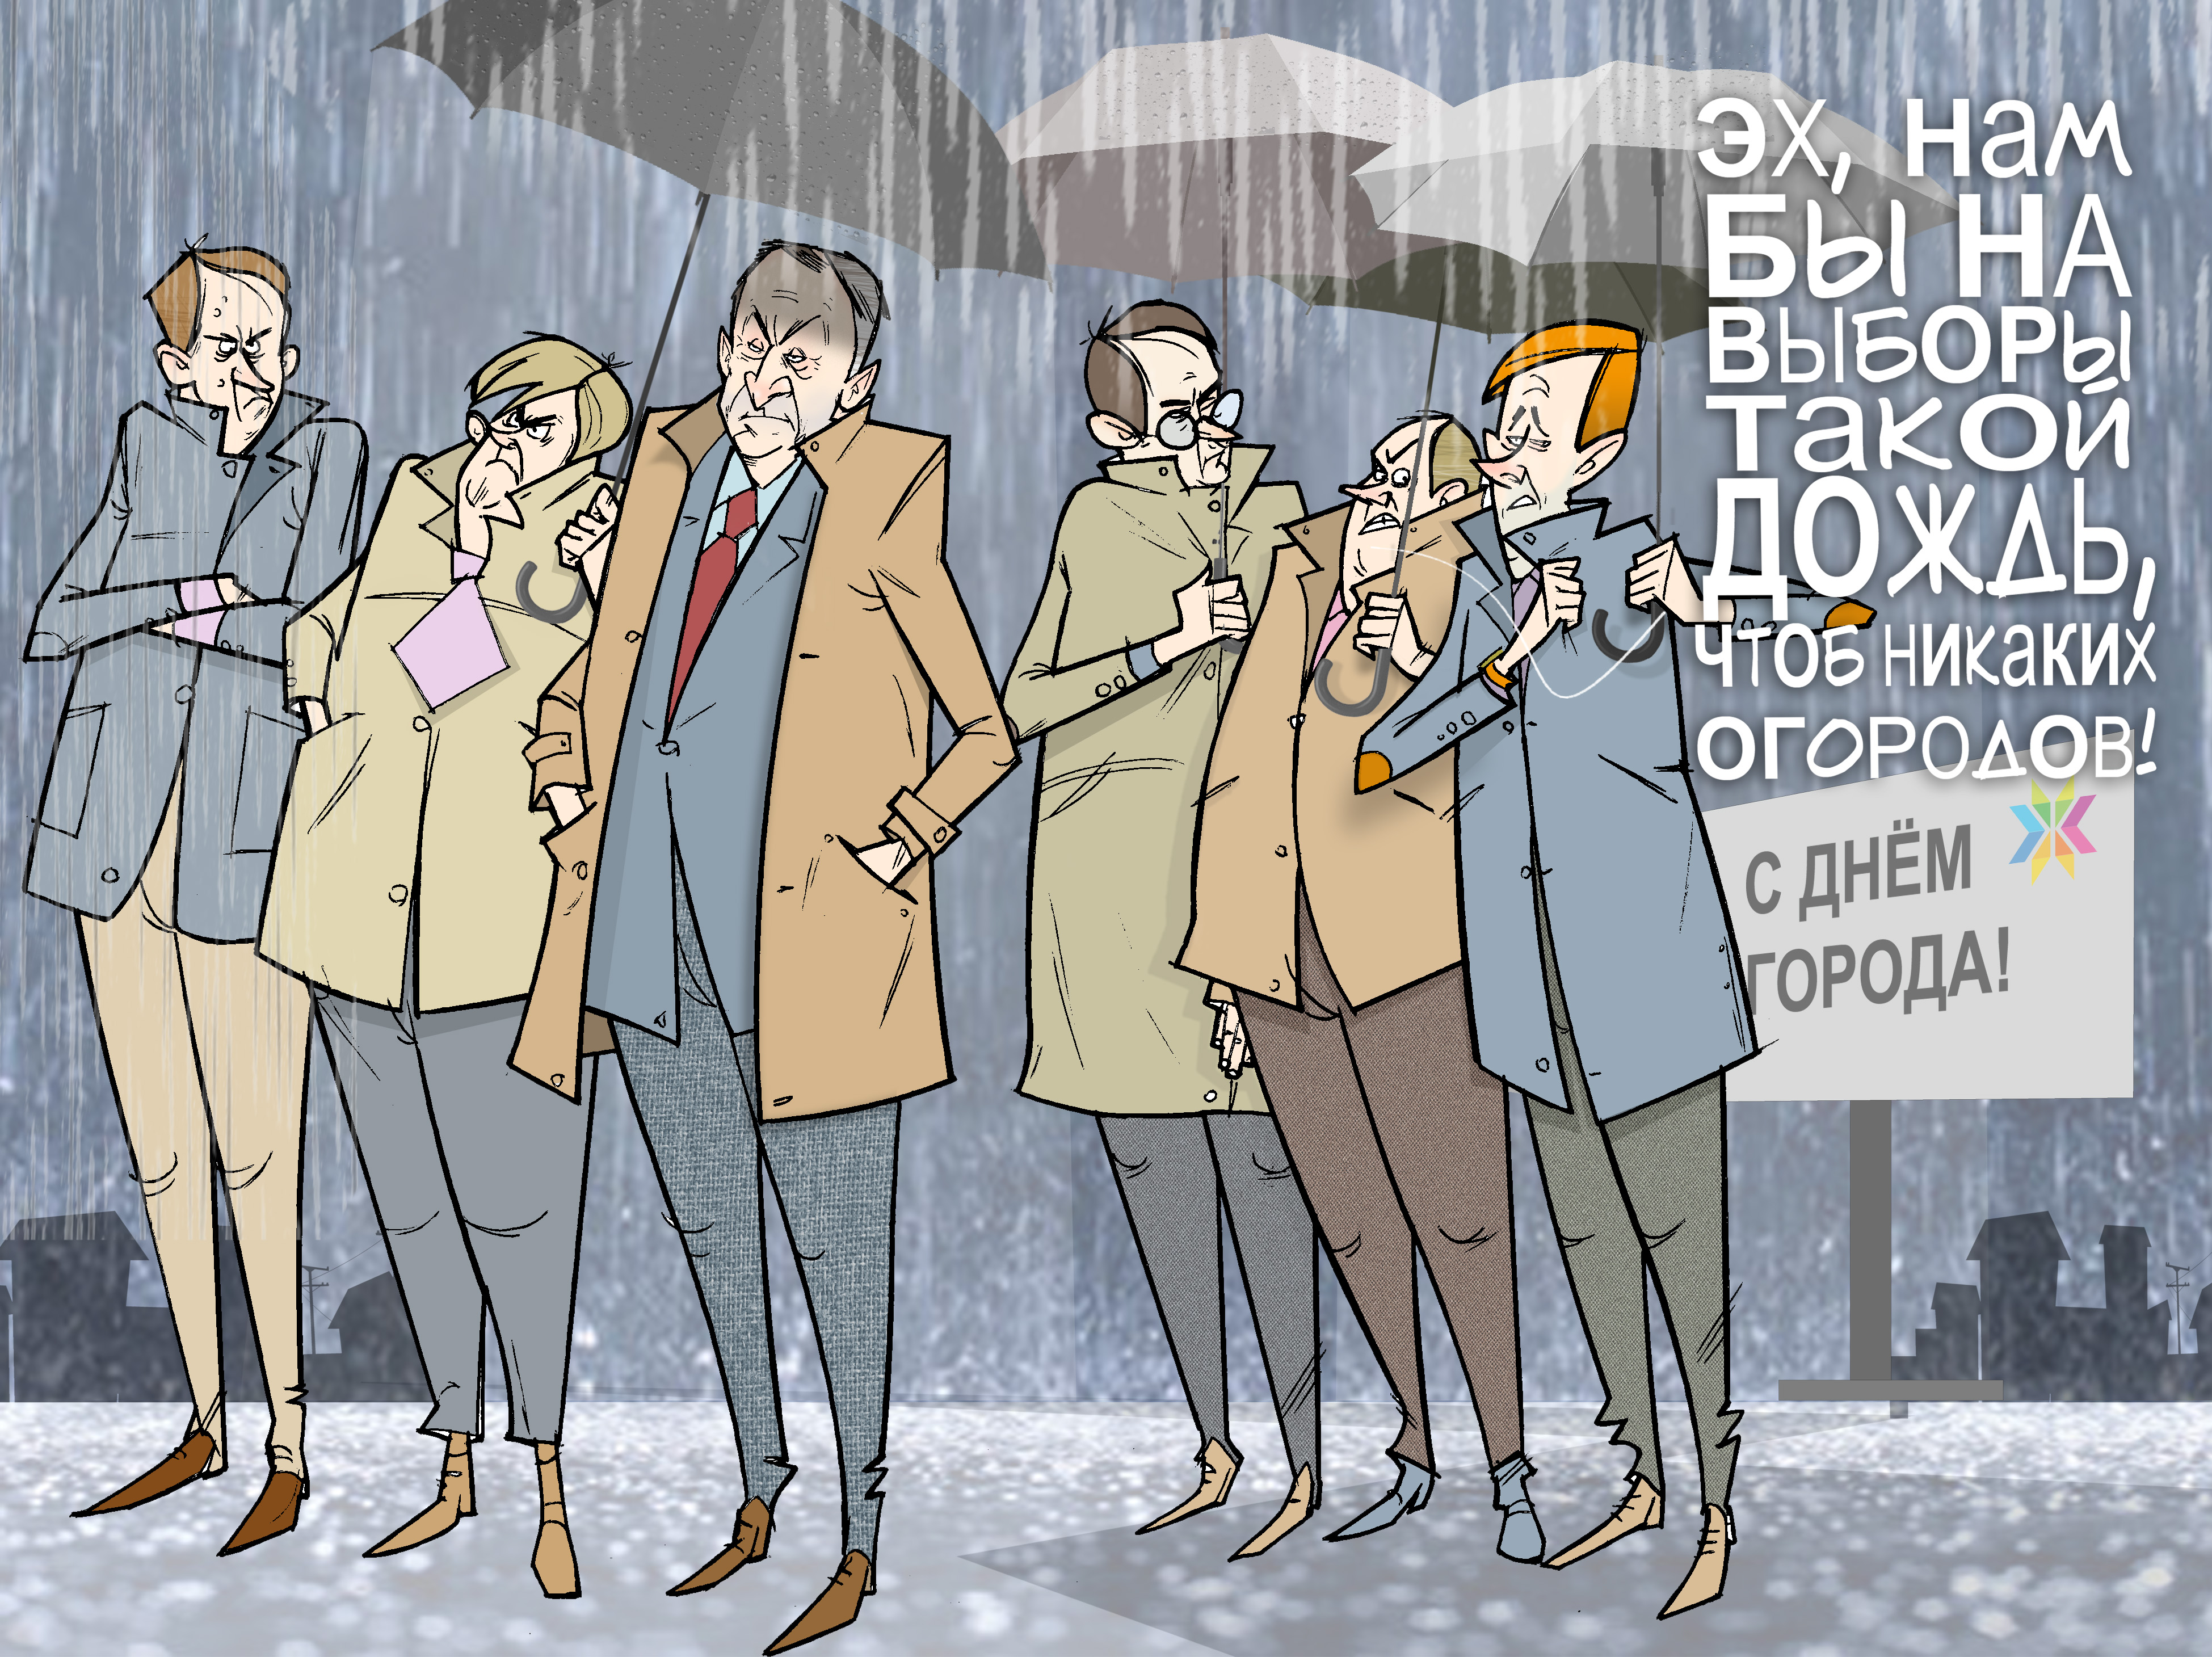 У природы нет плохой погоды. #Выборы #ГлаваУР #Соловьёв © Газета "День" 2014